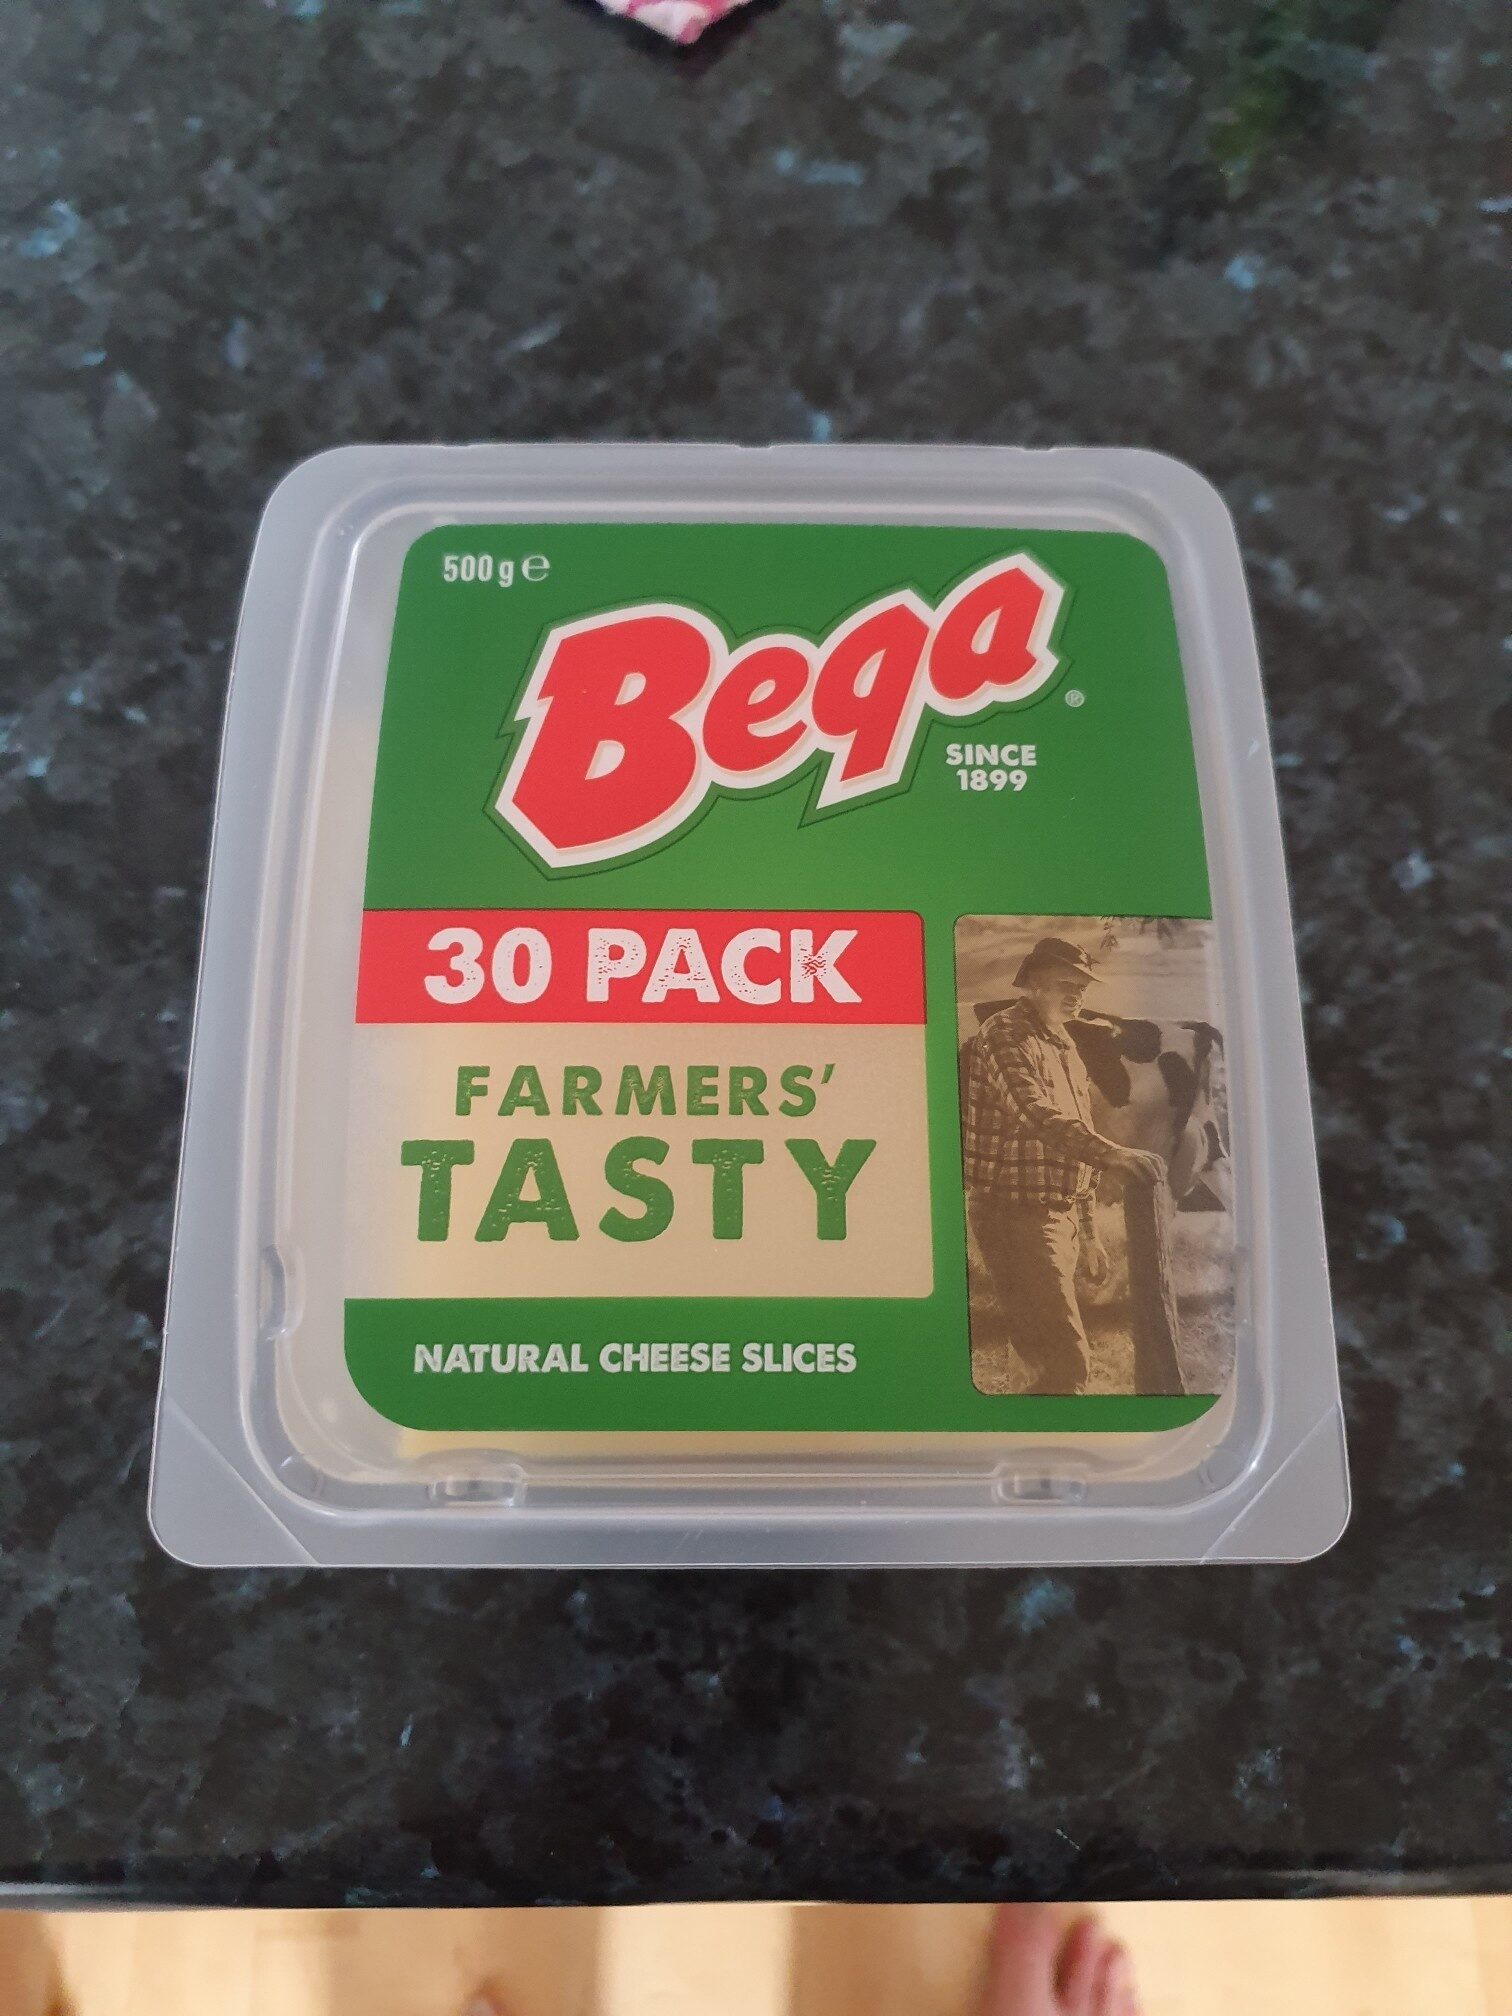 Bega Tasty cheese slices 30 pack - Ingredients